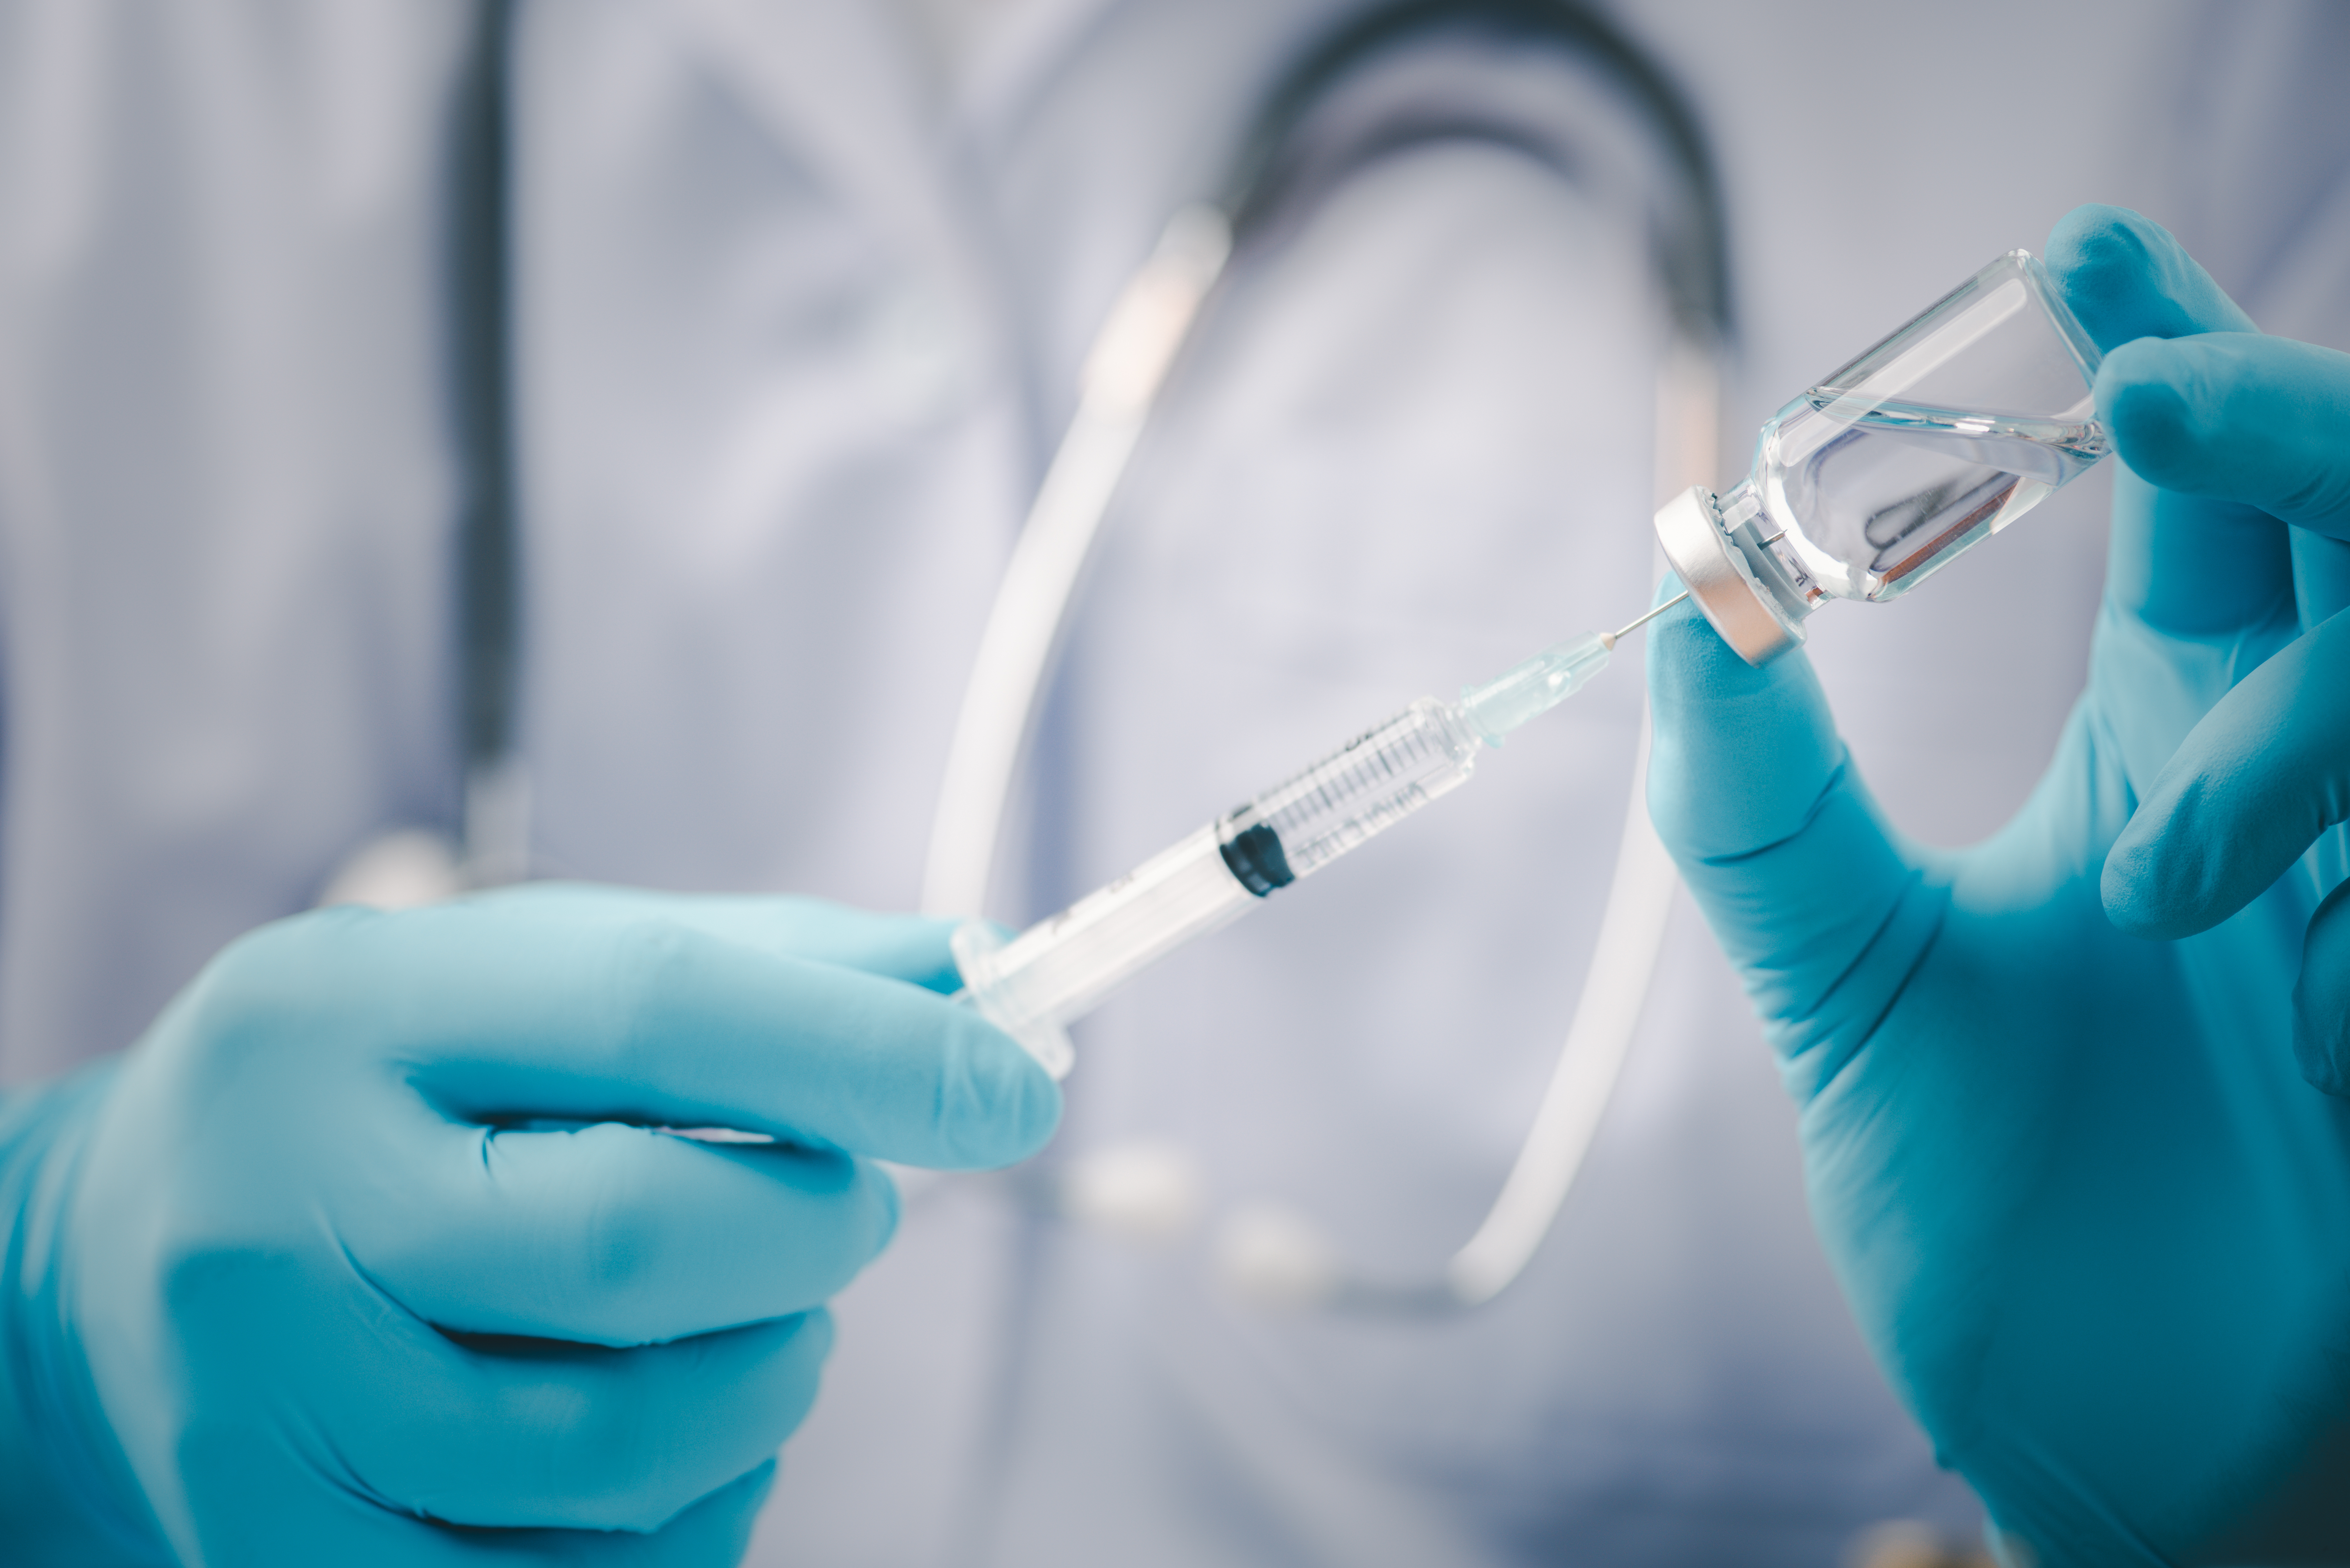     Pfizer-BioNTech débutent l'essai clinique d'un vaccin contre Omicron

